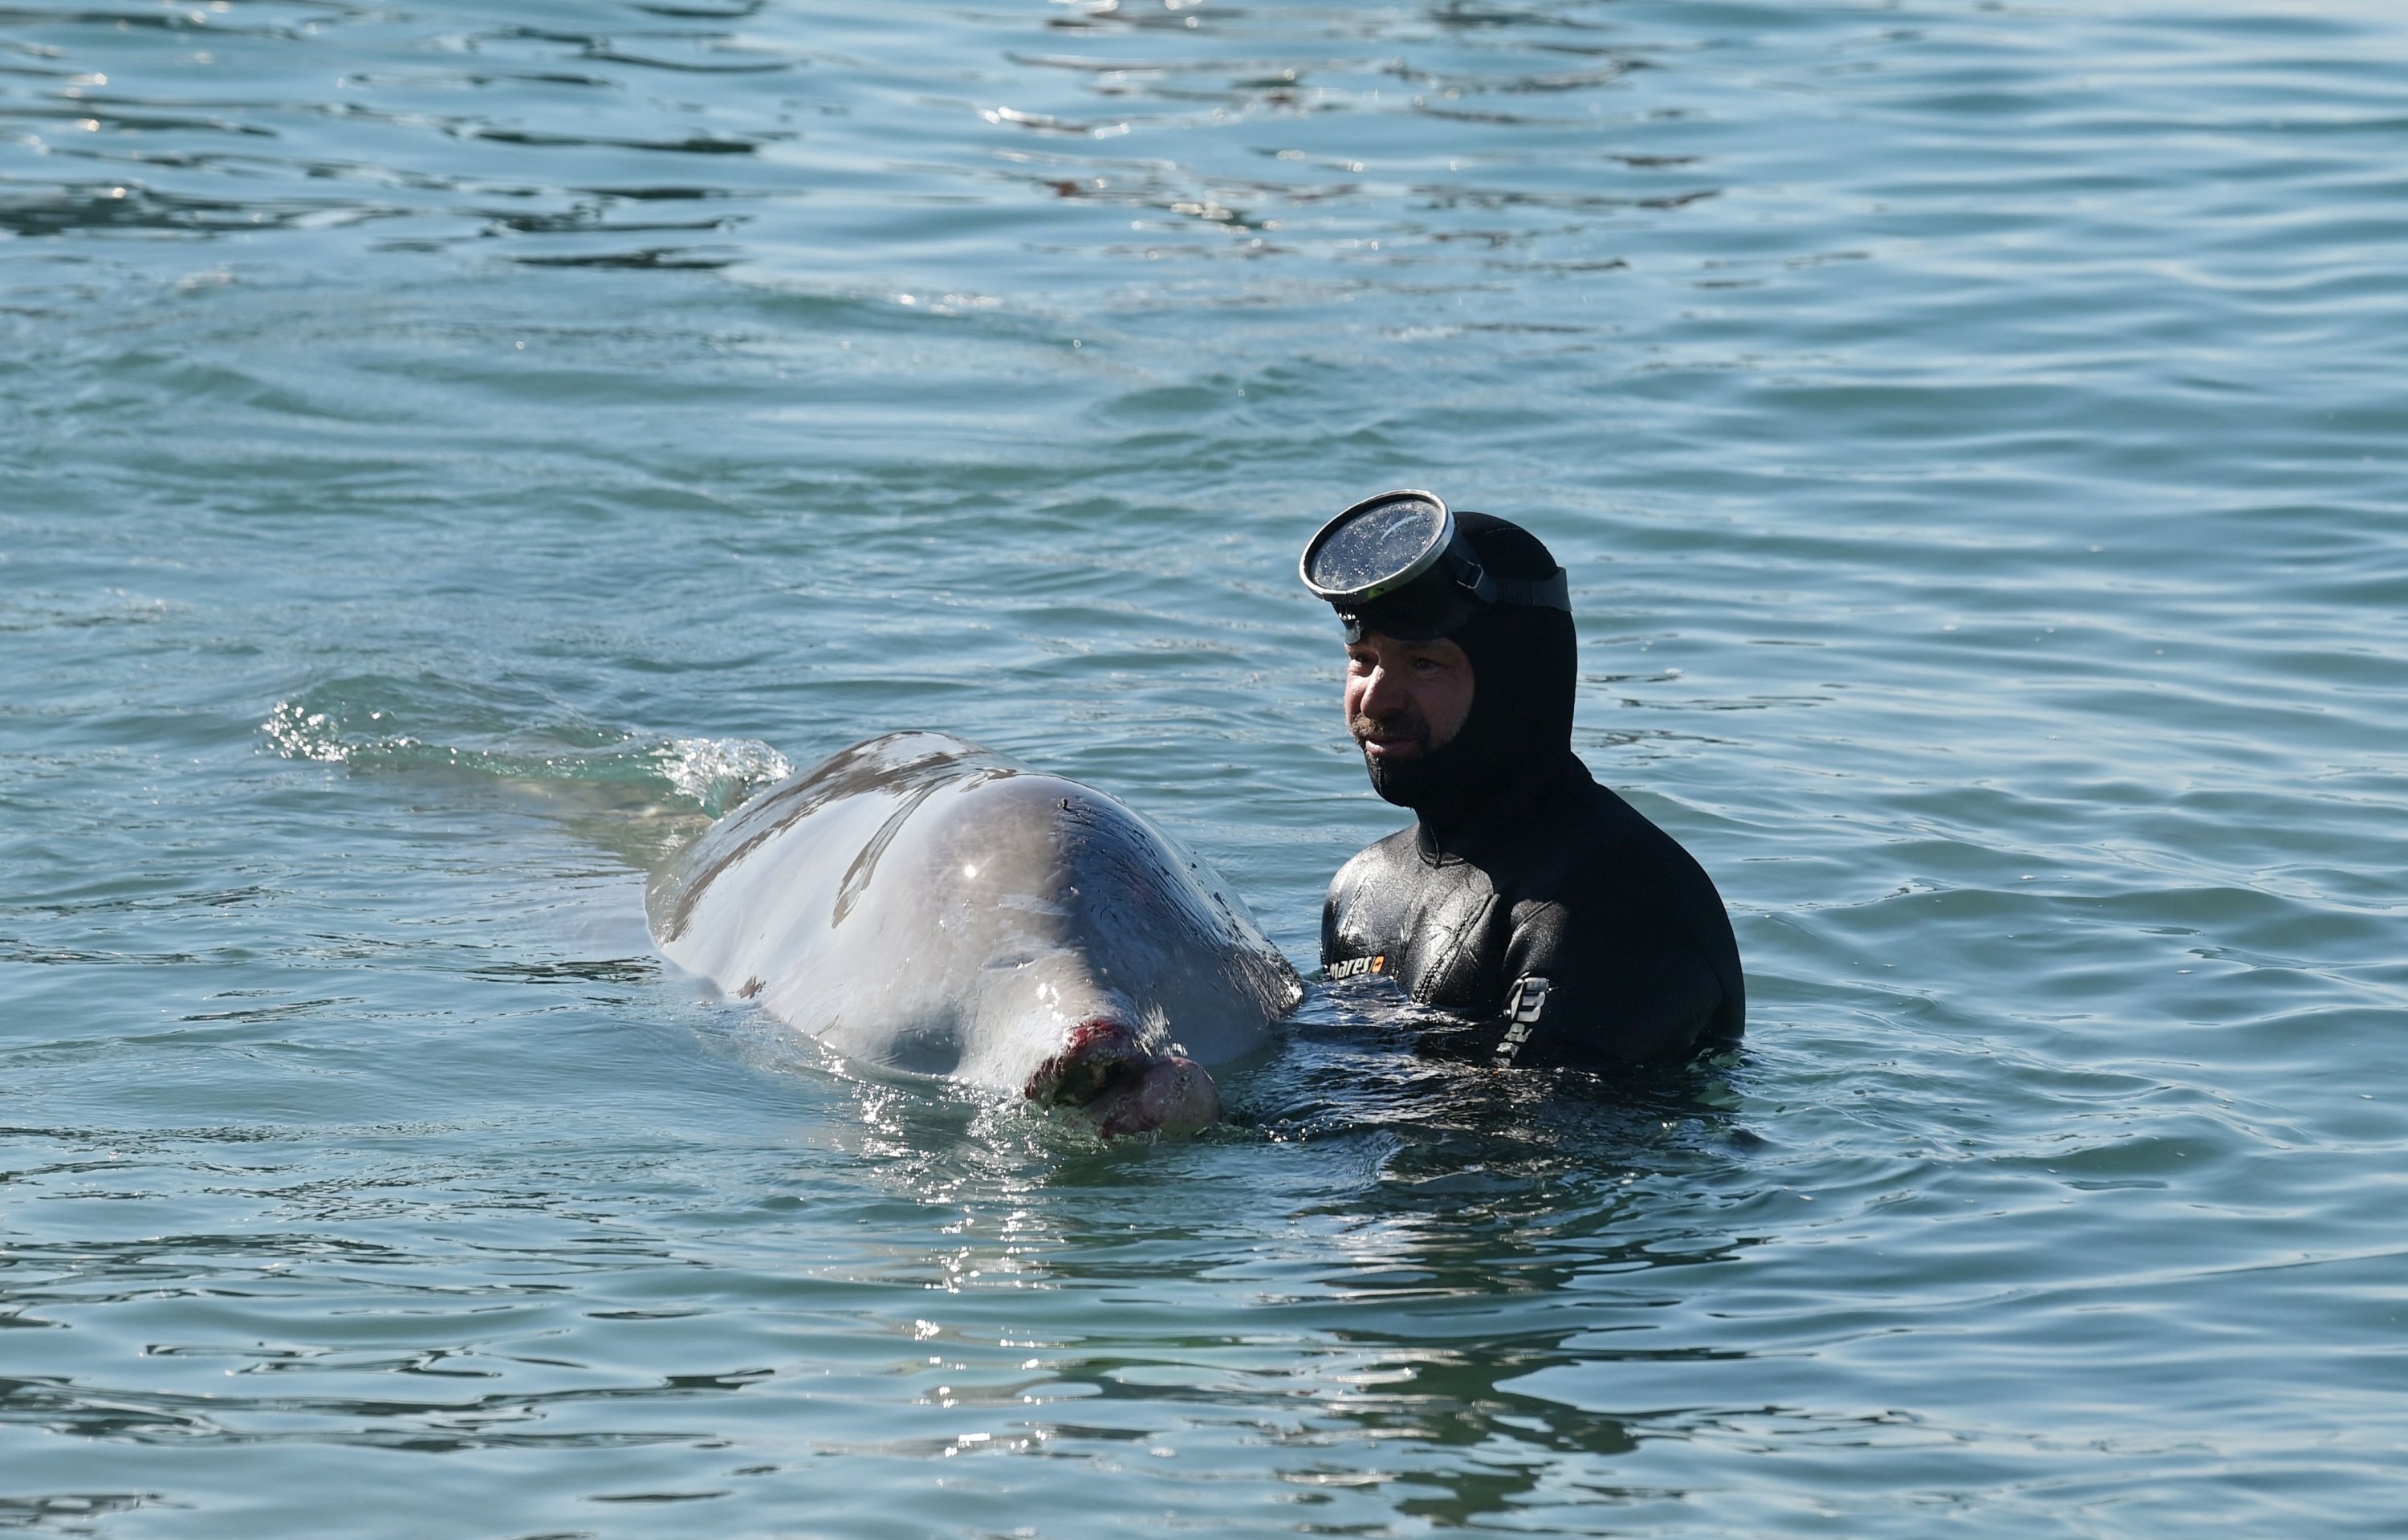 Seorang ahli dari ARION cetacean center menyelamatkan seekor paus kecil, yang tampaknya lemah dan terluka, yang terdampar di pantai di pinggiran ibu kota Yunani, Athena.  (Foto AFP)